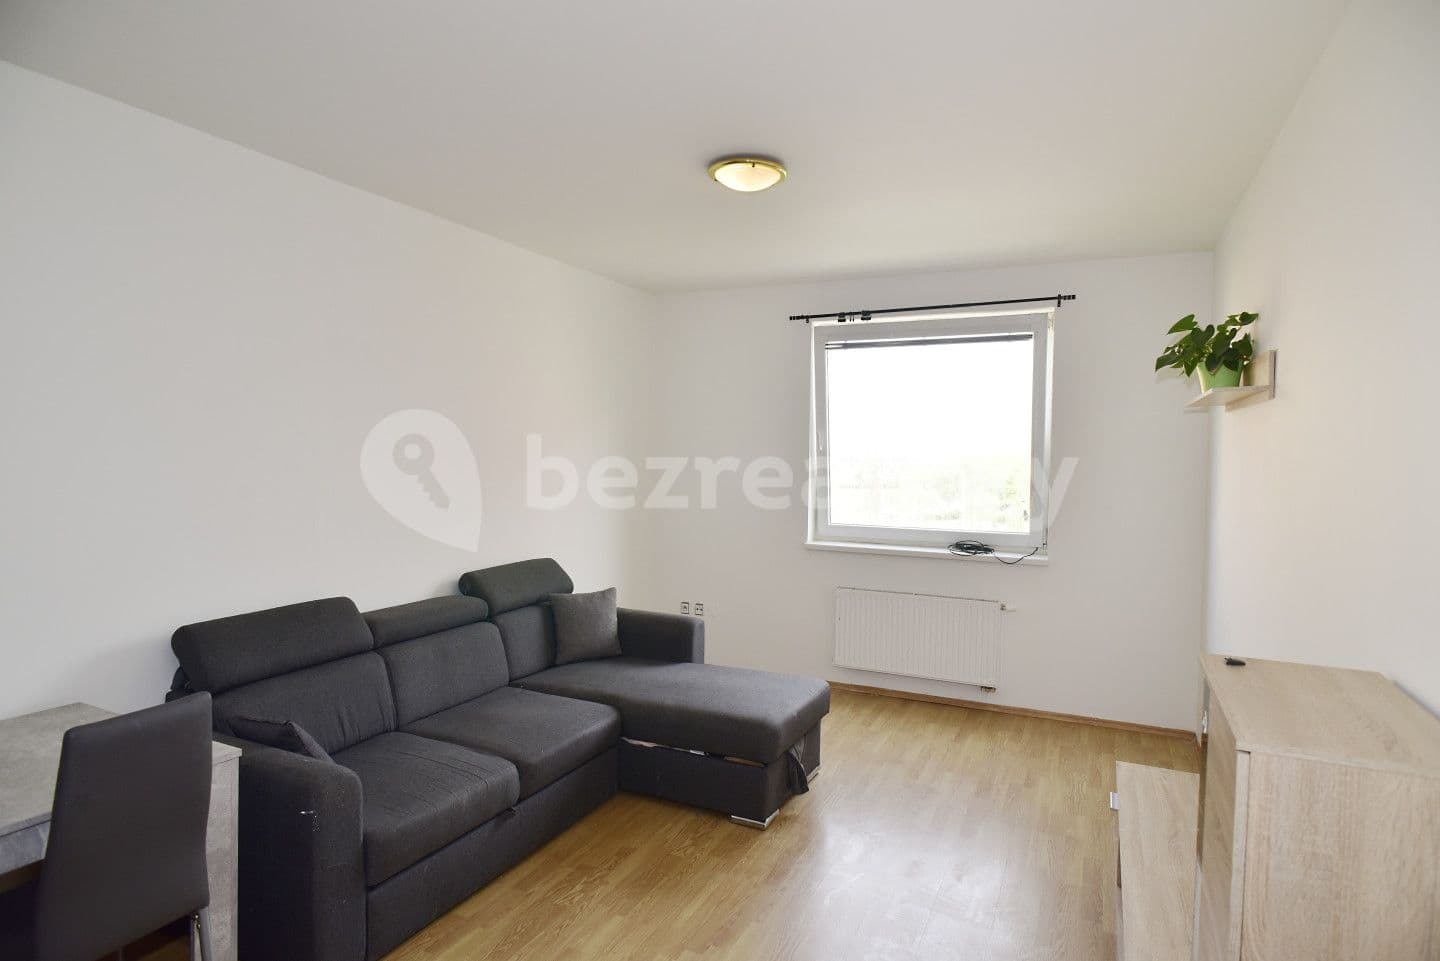 1 bedroom with open-plan kitchen flat for sale, 47 m², Buková, Jihlava, Vysočina Region